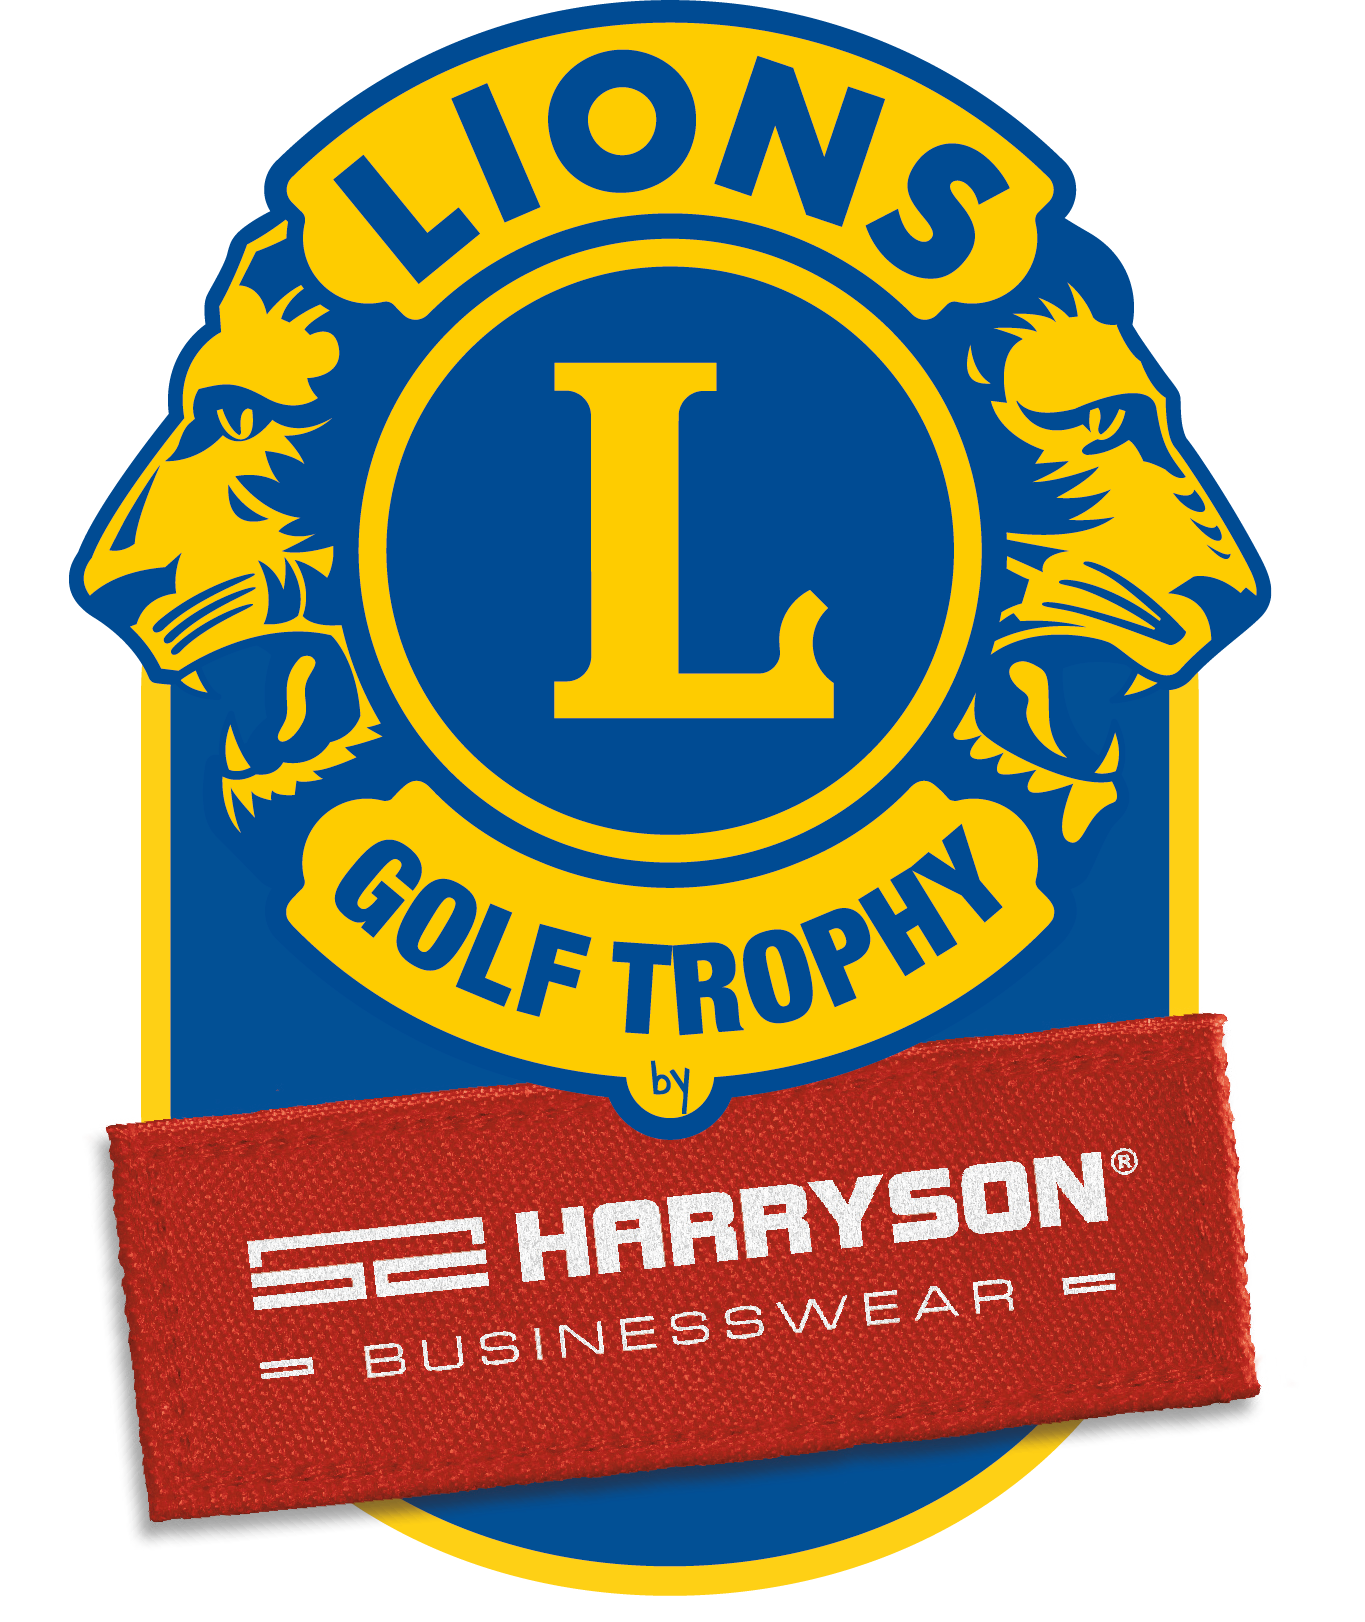 LIONS GOLF TROPHY by HARRYSON BUSINESSWEAR PRINT LOGO